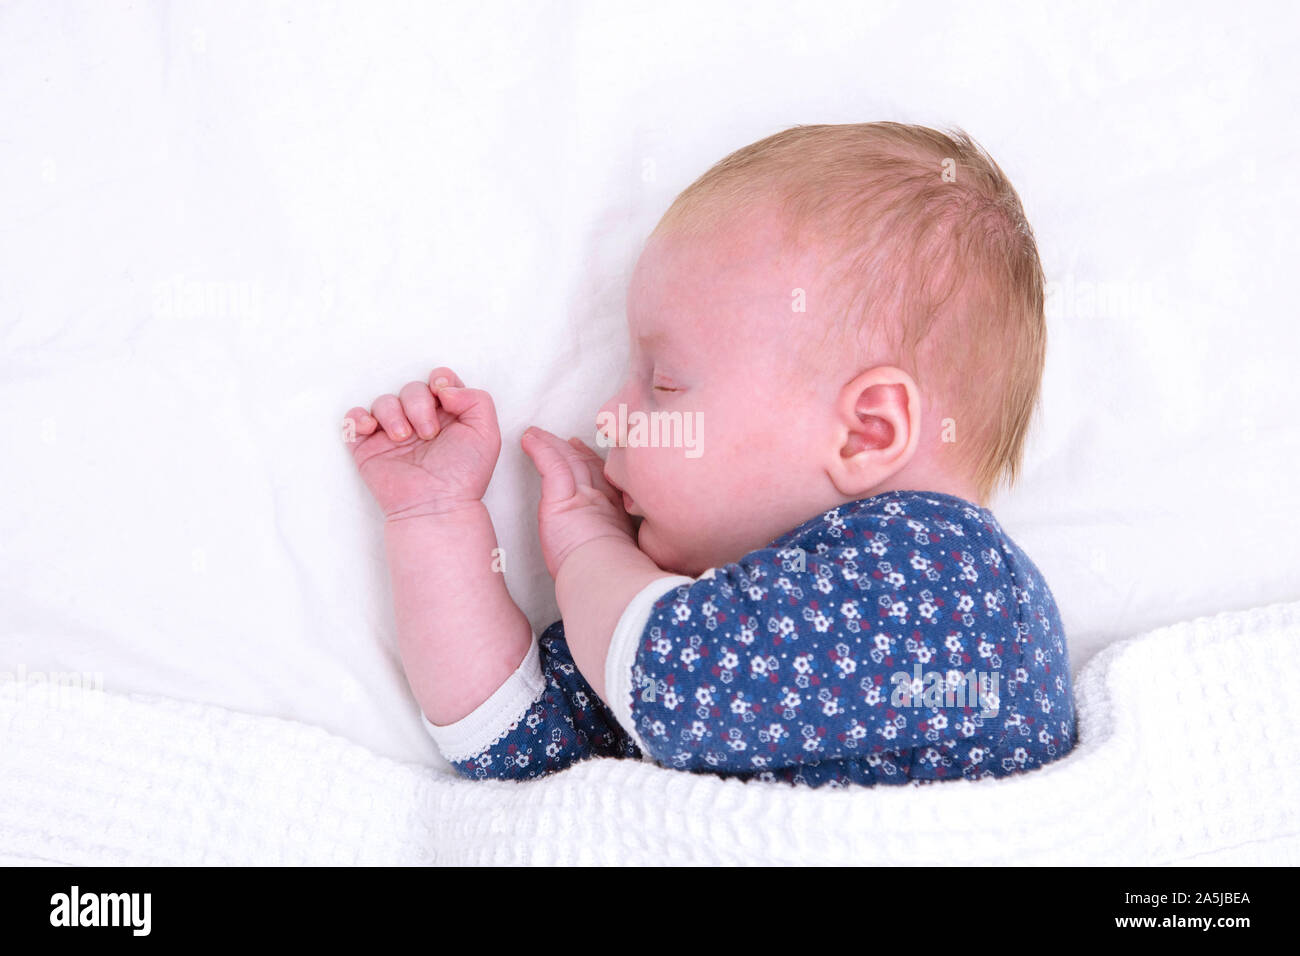 Neugeborenes Baby schlafend auf einem weißen Blatt. Cute Baby Stockfoto